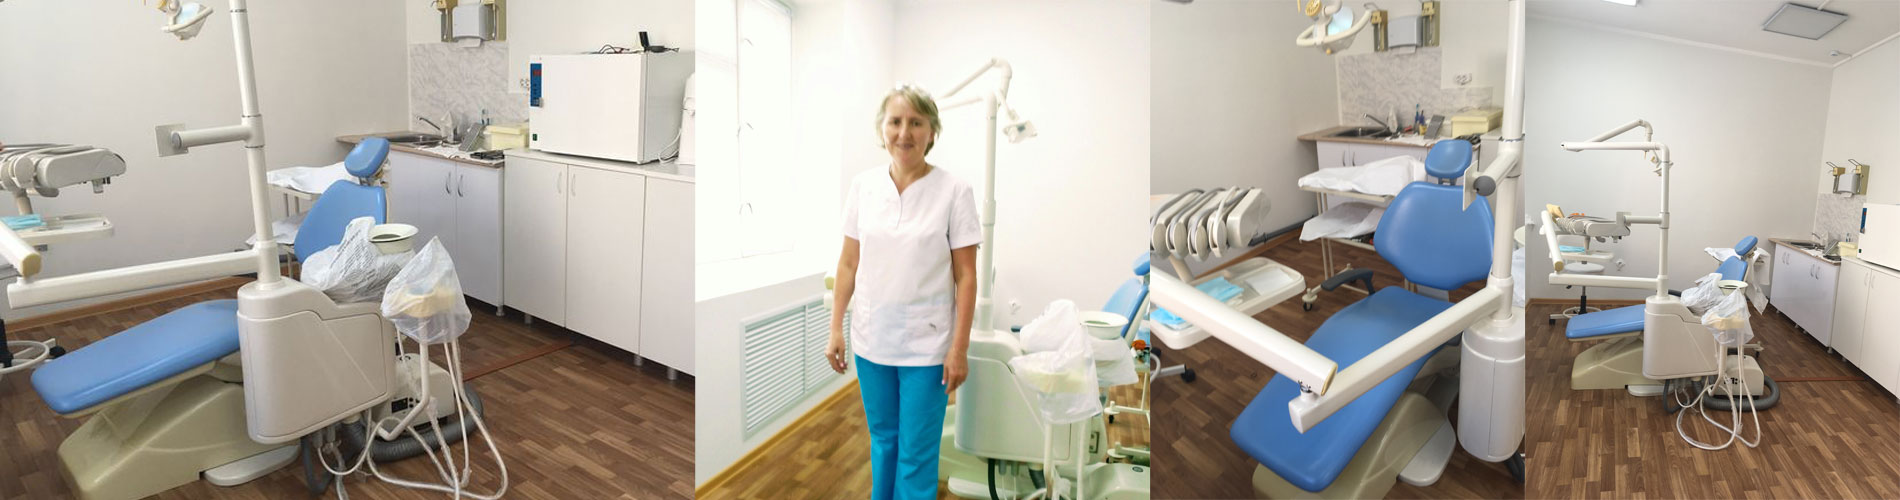 Первый частный стоматологический кабинет открылся в поселке Италмас